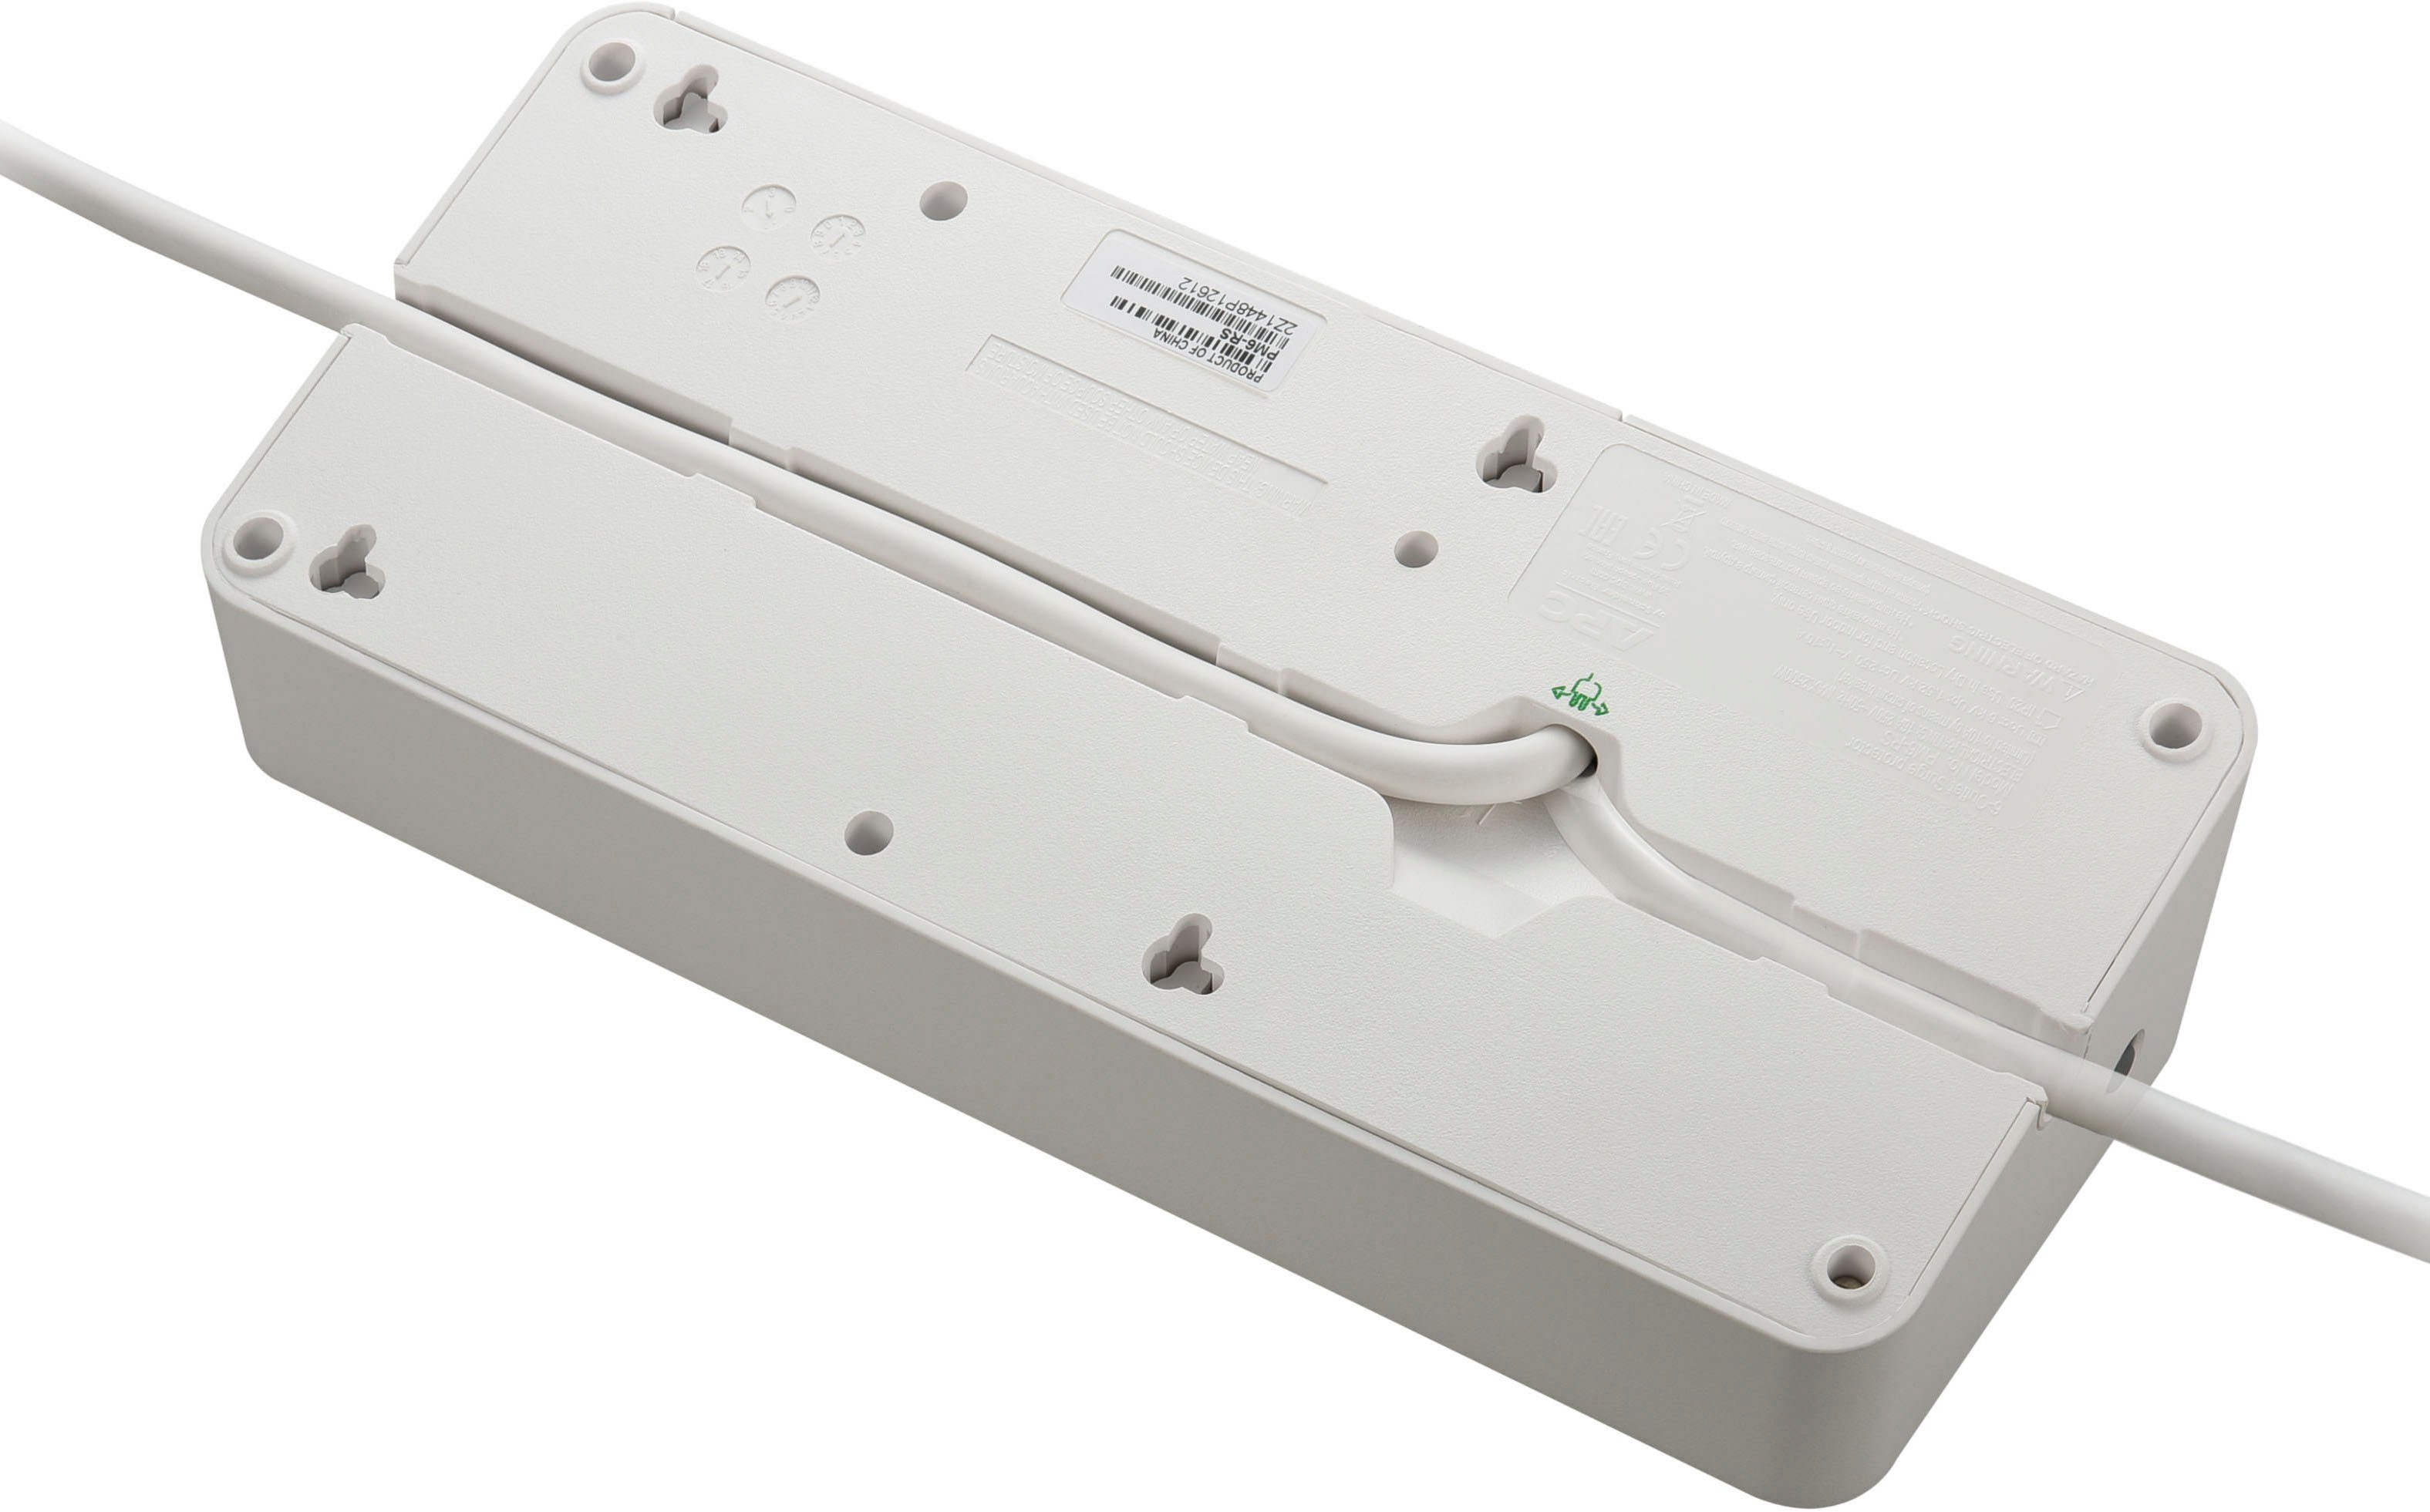 APC (Ein- Steckdosenleiste m) USB-Anschlüsse, 2 LED-Statusanzeige, Überspannungsschutz, / Kabellänge 6-fach Ausschalter, PM6-GR